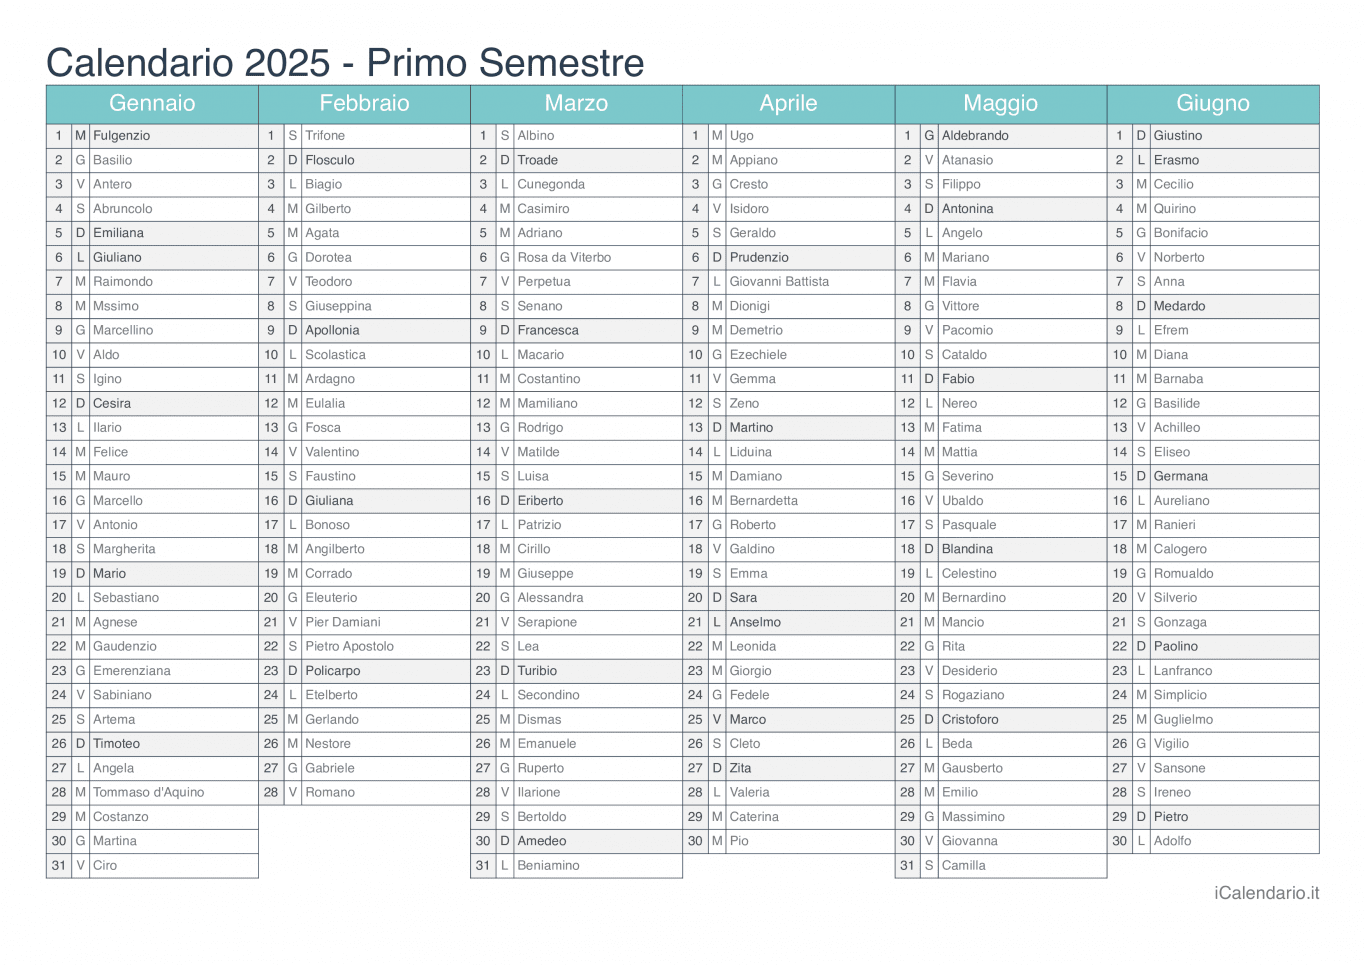 Calendario semestrale 2025 con santi e festivi - Turchese